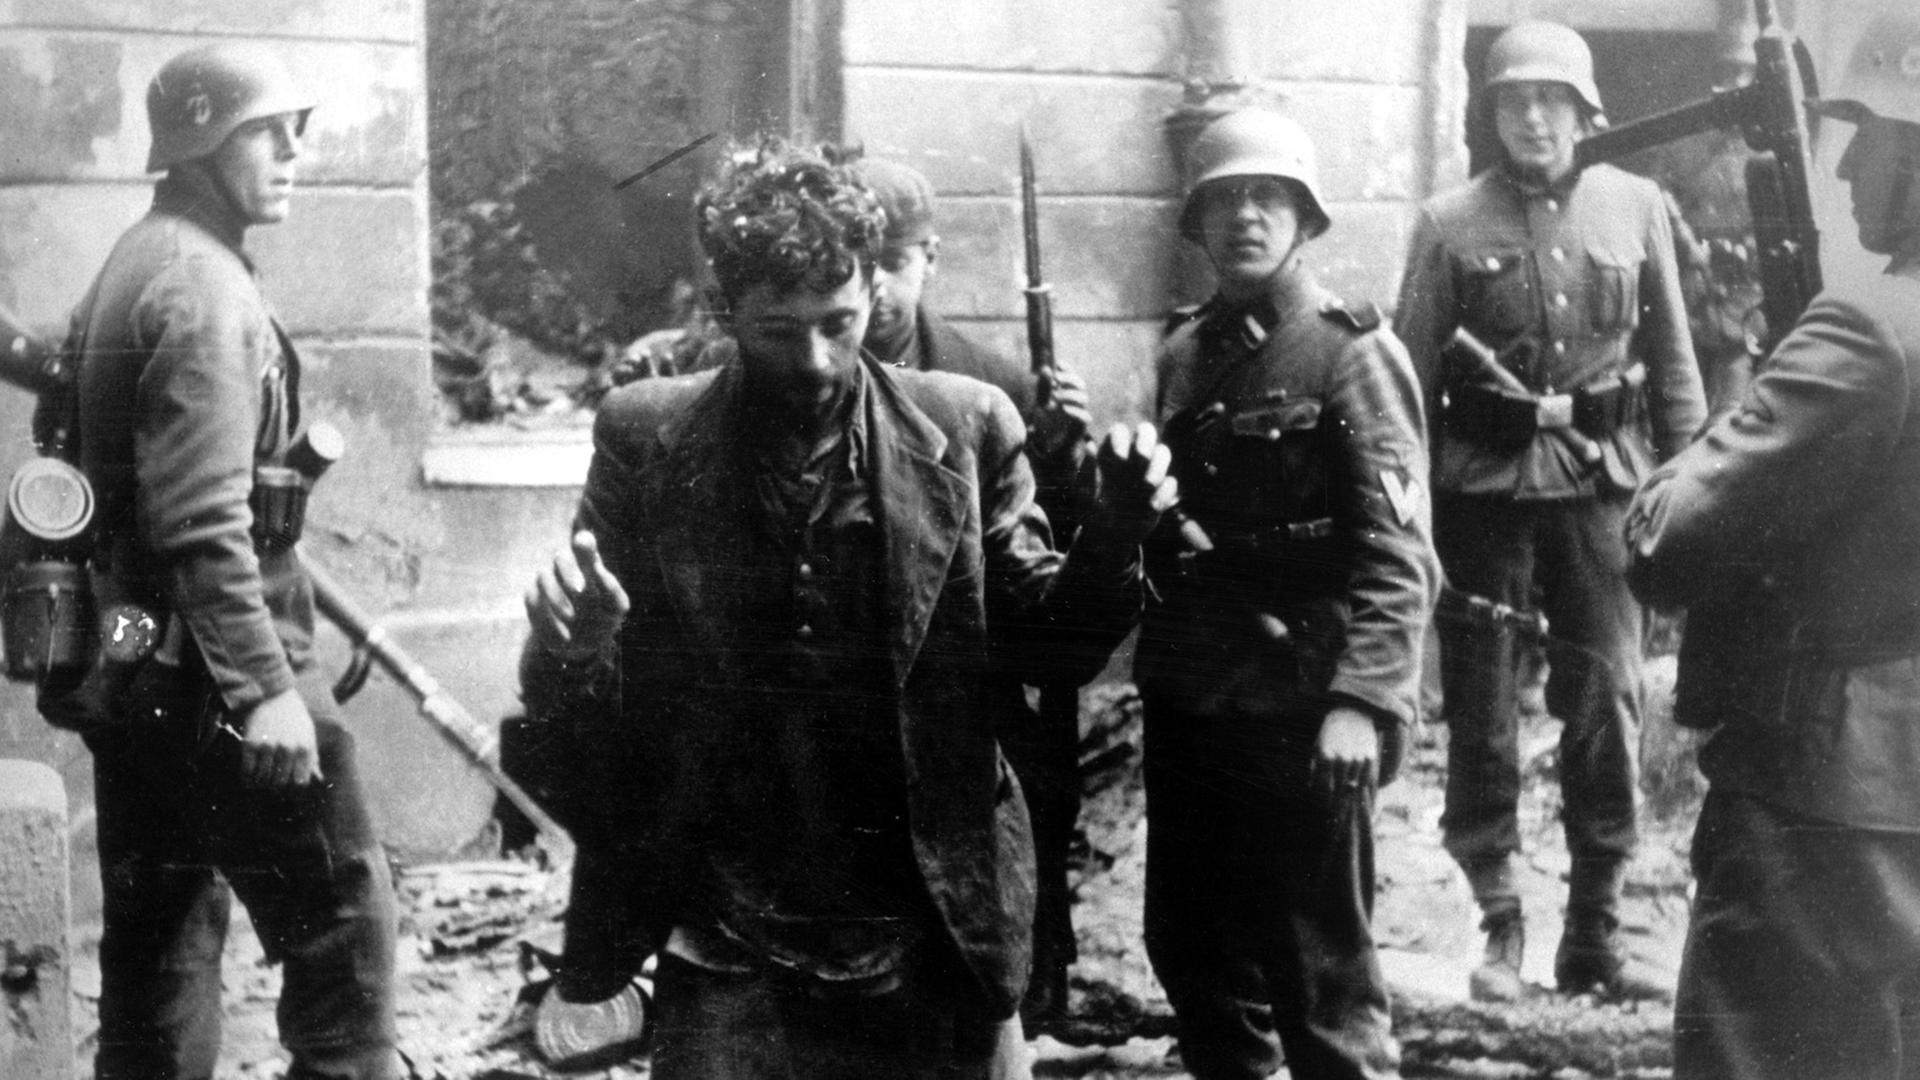 Zwei Juden, die sich in einem Haus versteckt hatten, werden von SS-Soldaten gefangen genommen. Die Aufnahme entstand während des Warschauer Getto-Aufstands, der vom 19. April 1943 bis zu seiner blutigen Niederschlagung am 16. Mai 1943 dauerte. 